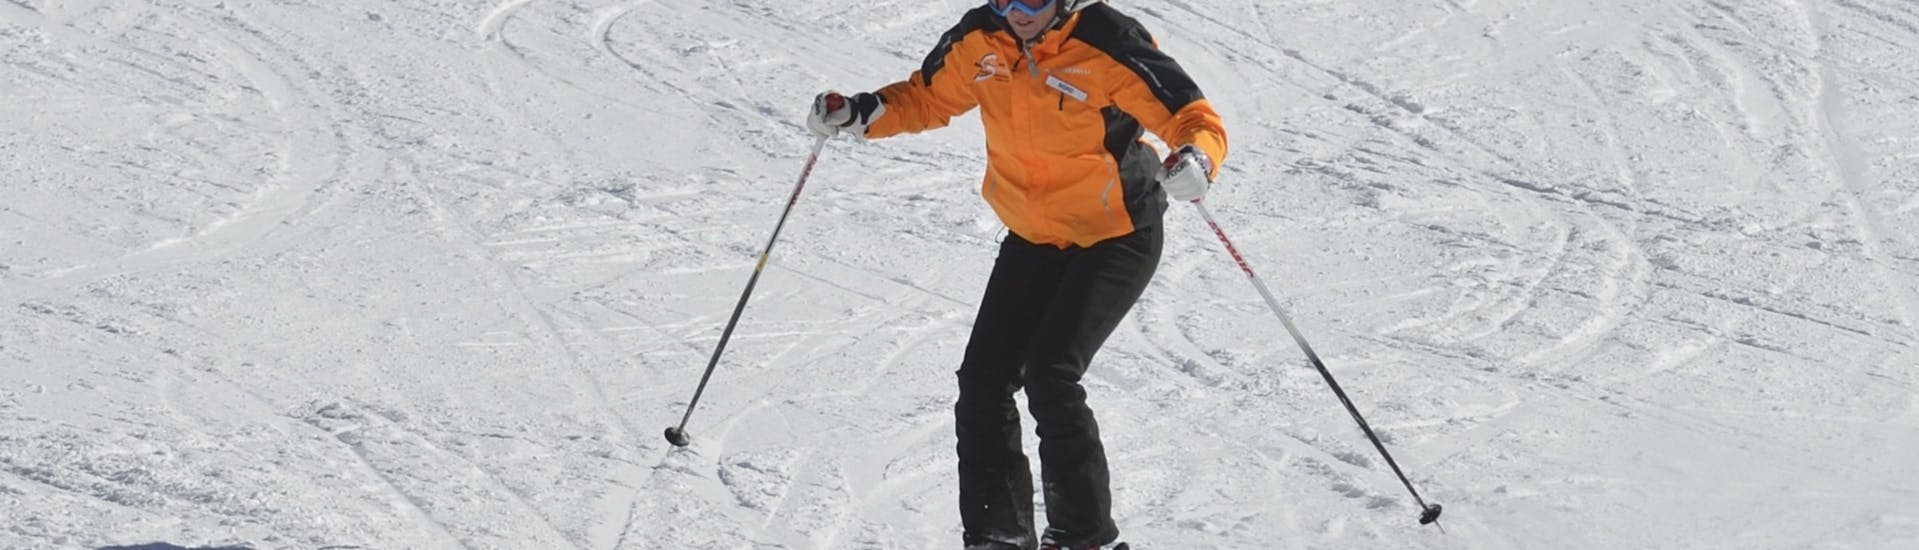 Privé skilessen voor volwassenen vanaf 13 jaar - beginners.